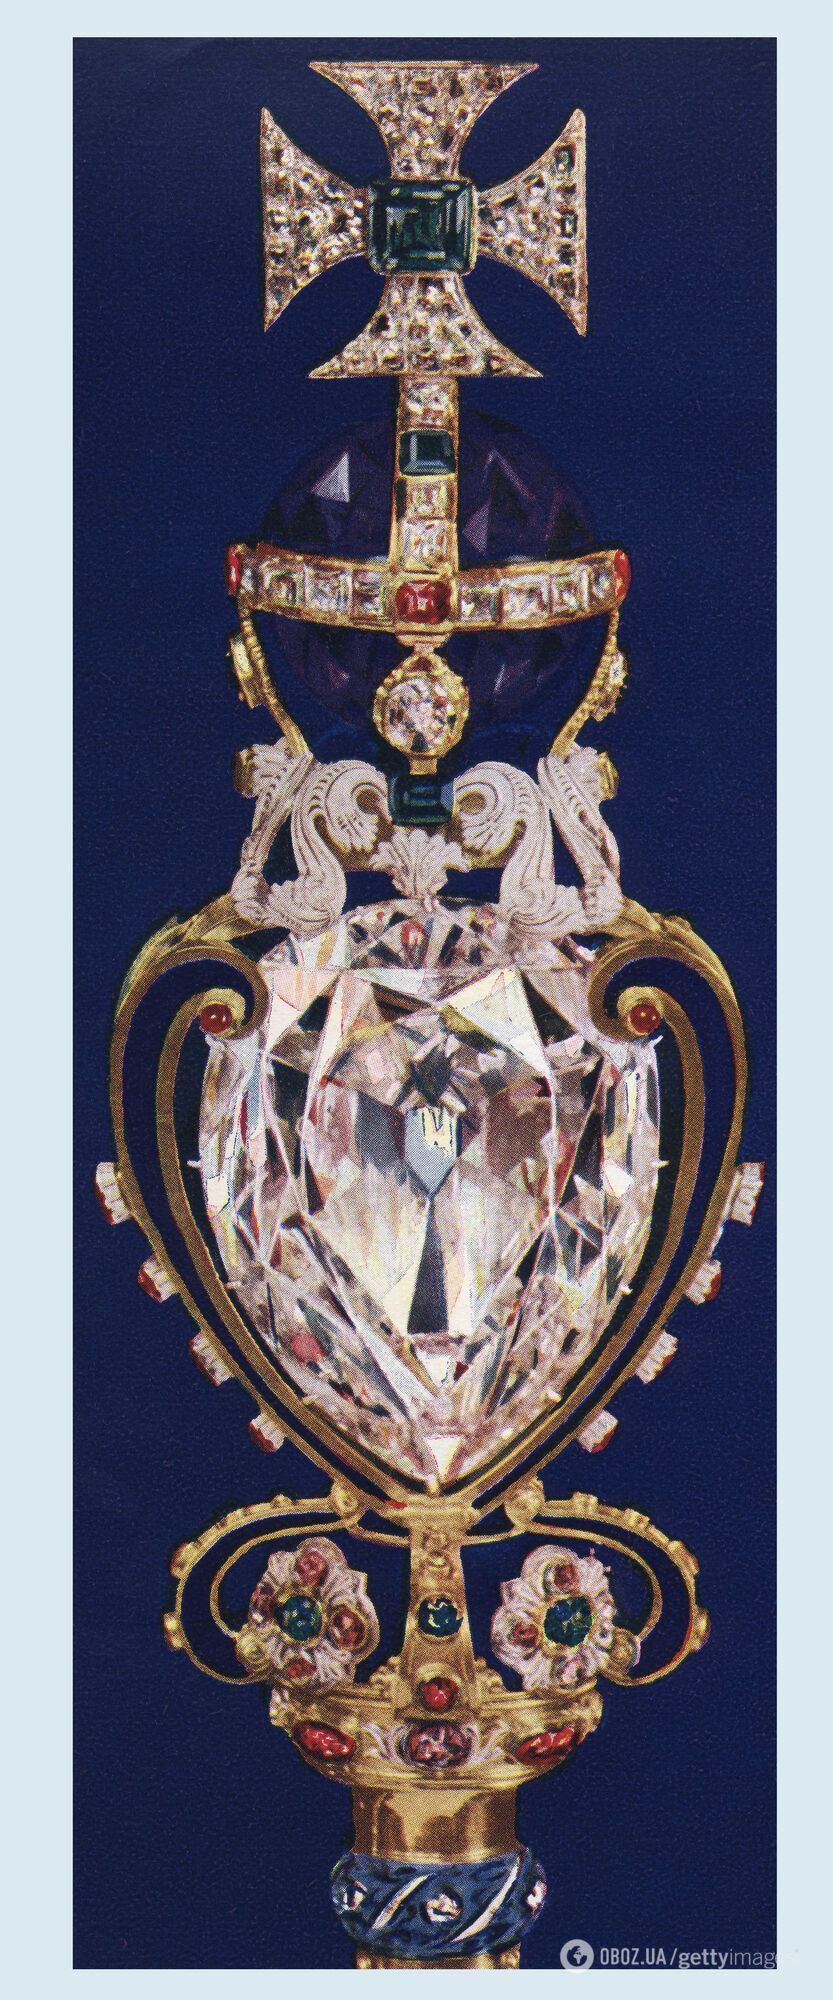 Між Південною Африкою та Великою Британією назріває скандал через "найбільший діамант у світі" на скіпетрі Єлизавети ІІ